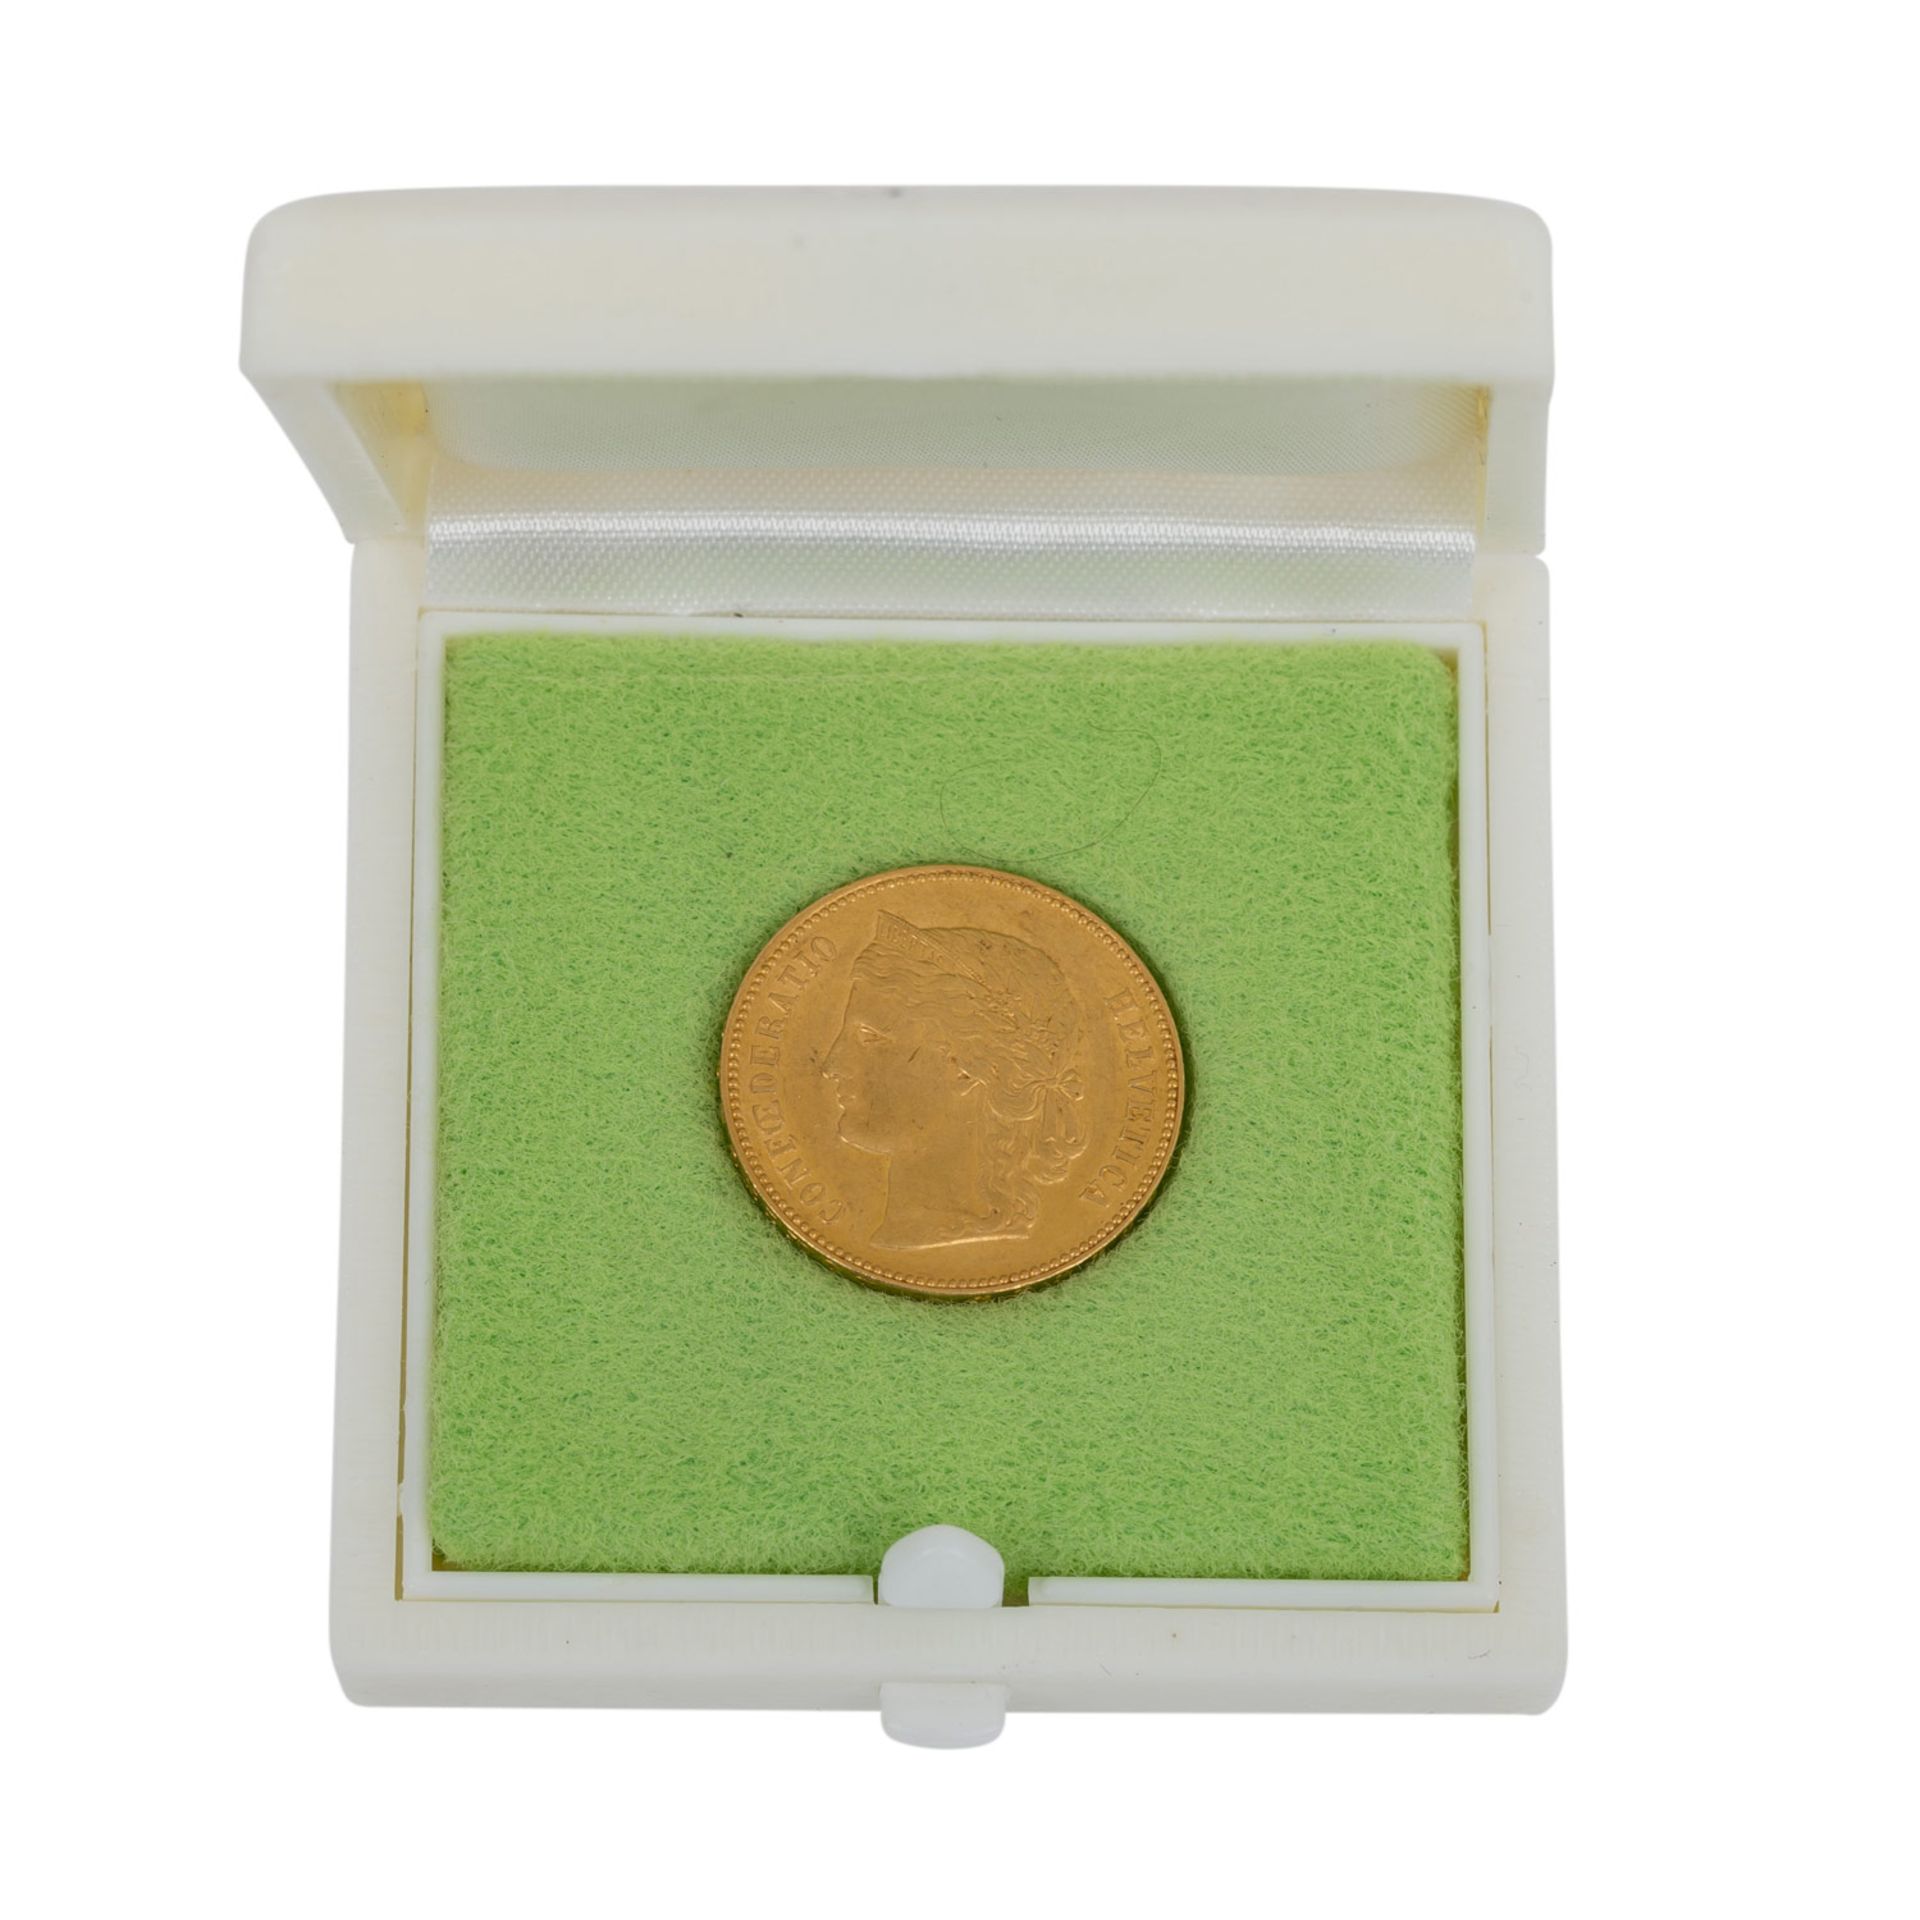 Schweiz/Gold - 20 Franken 1896/B, Helvetia,ss, deutliche Kratzer, berieben, 5,8g Gold